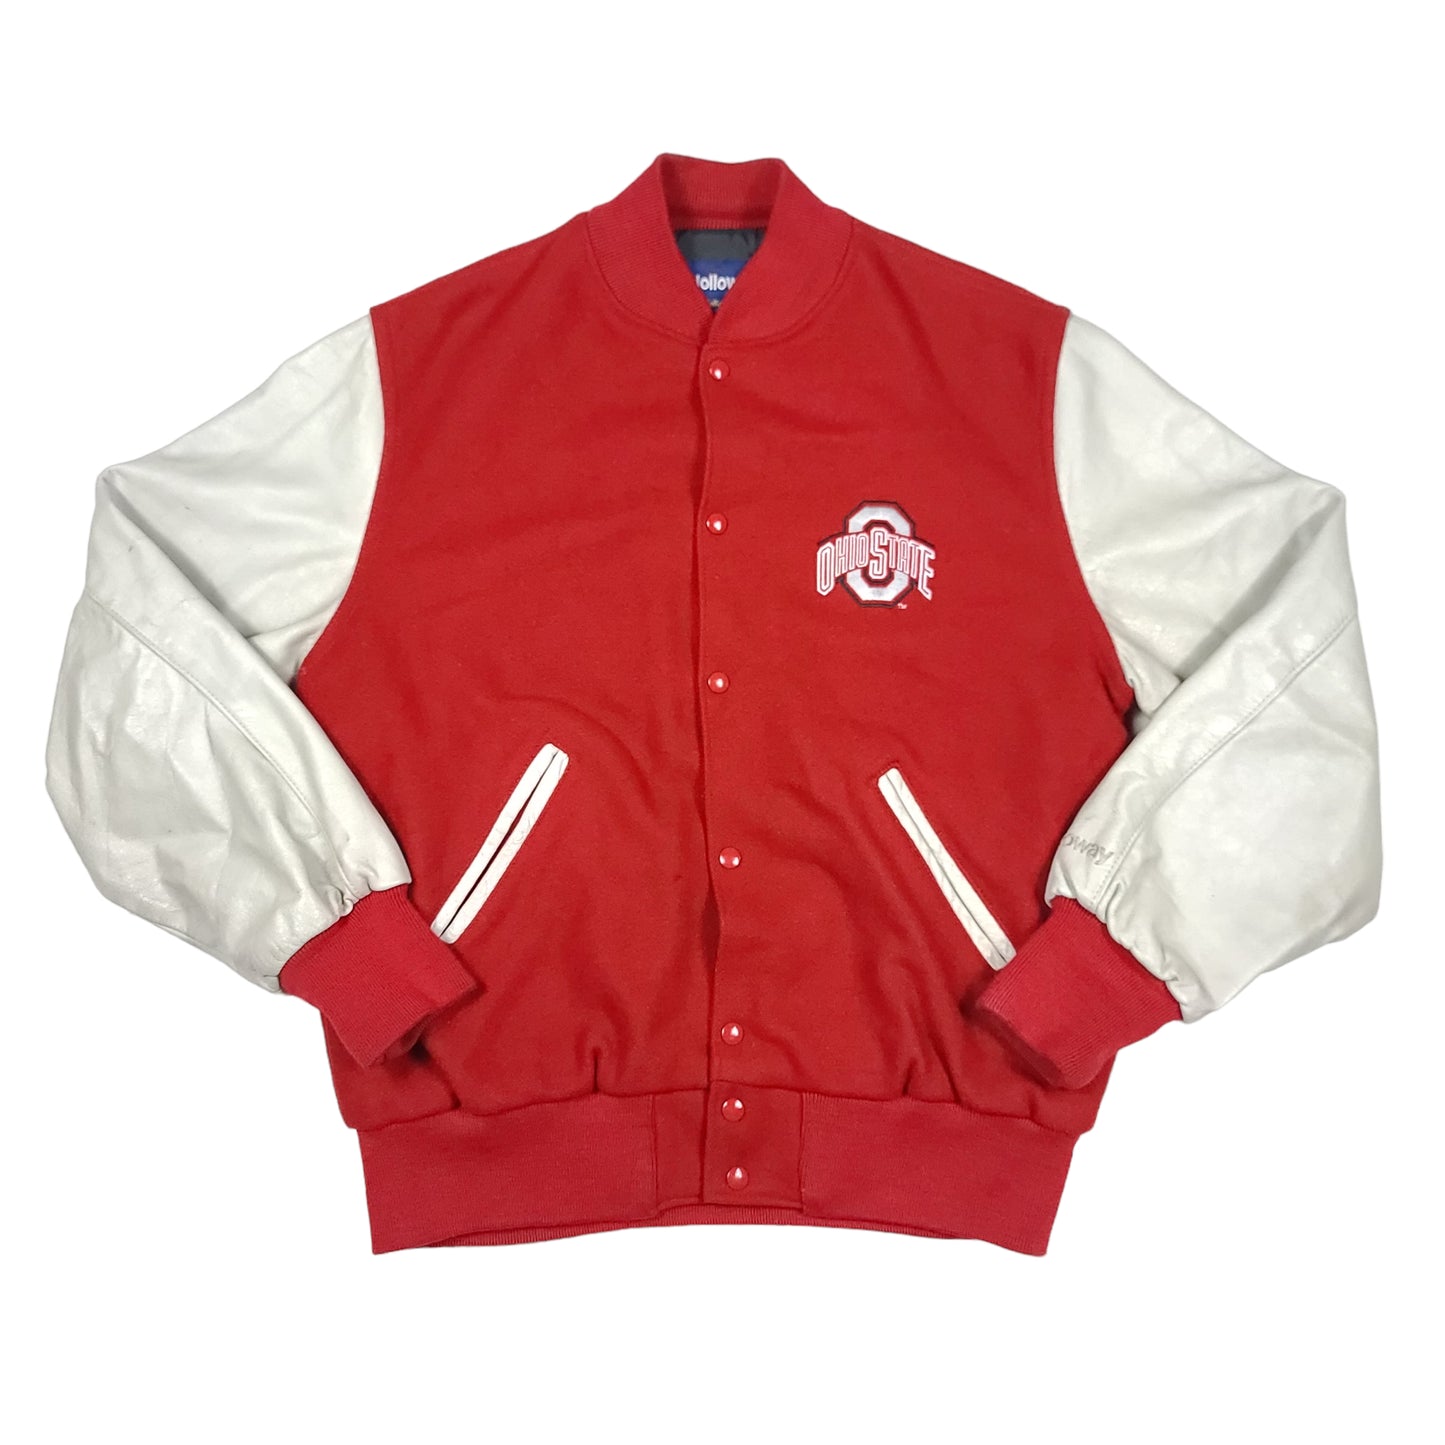 Vintage Ohio State University Wool Leather Letterman Jacket